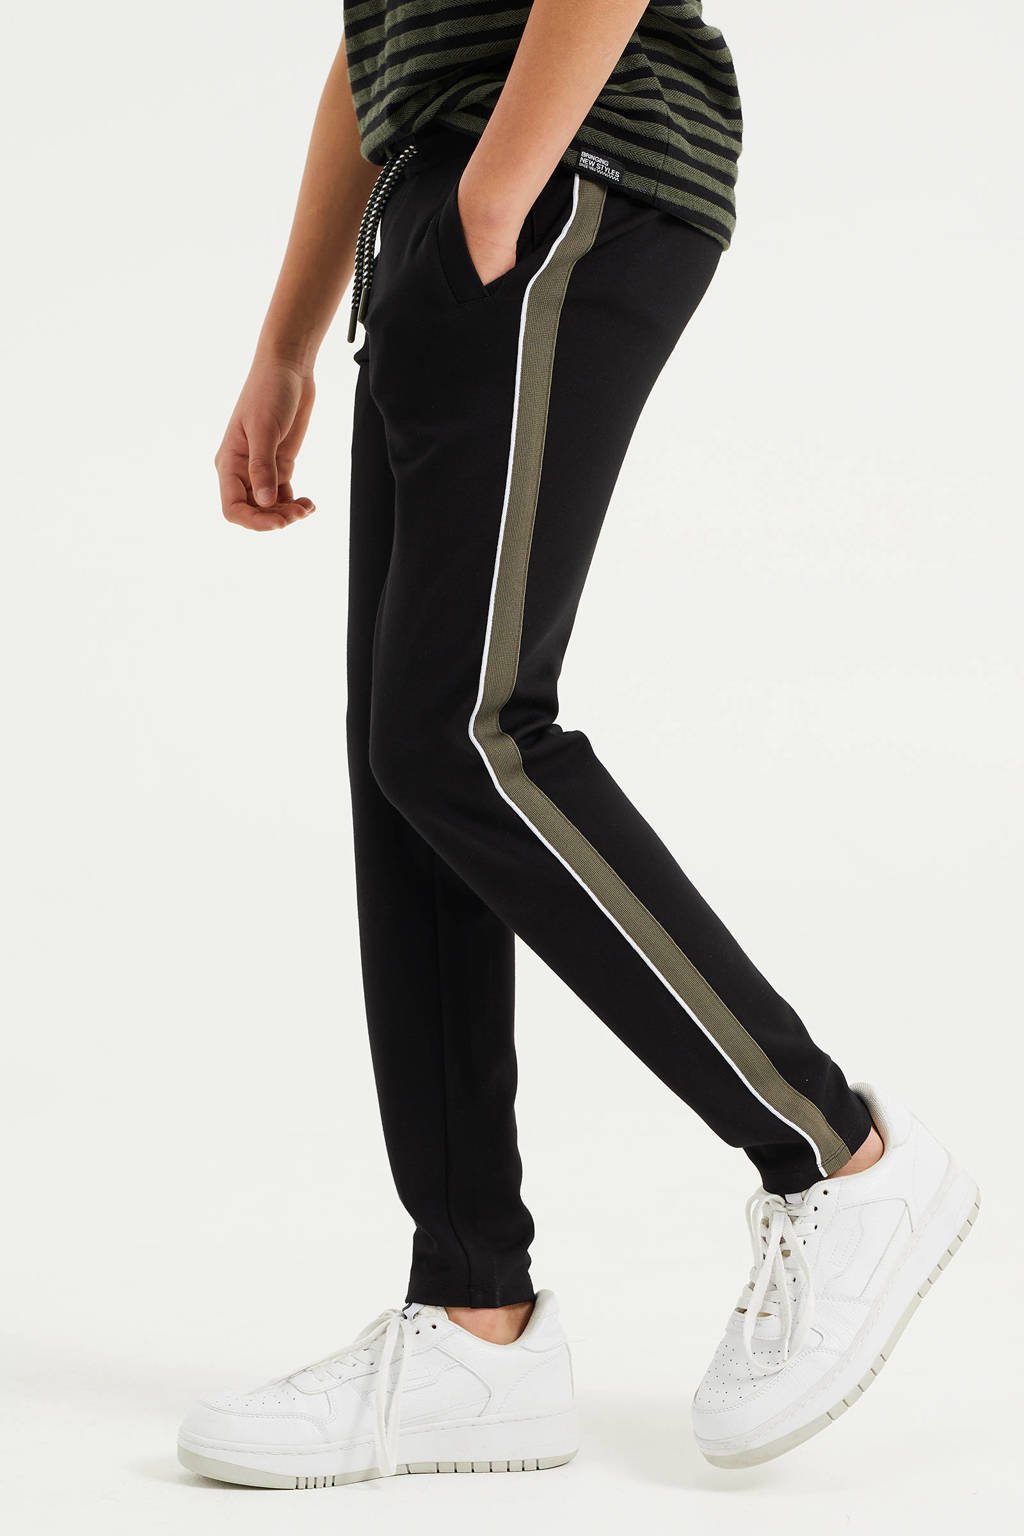 WE Fashion slim fit joggingbroek met zijstreep zwart/olijfgroen/wit, Zwart/olijfgroen/wit